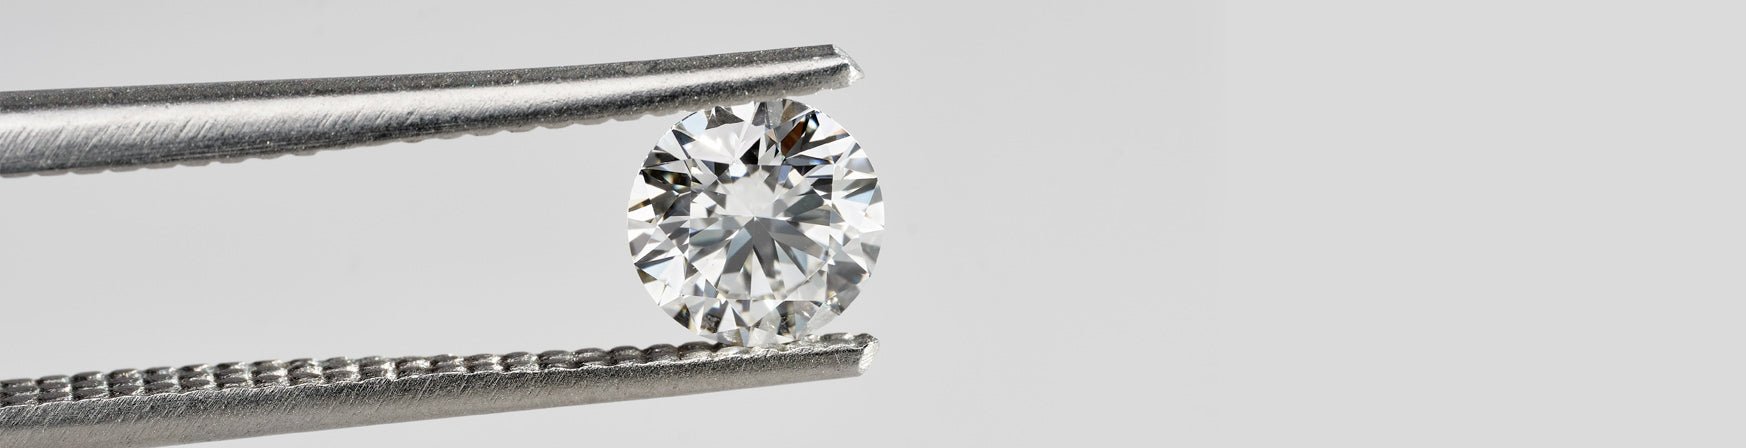 a diamond held in tweezers